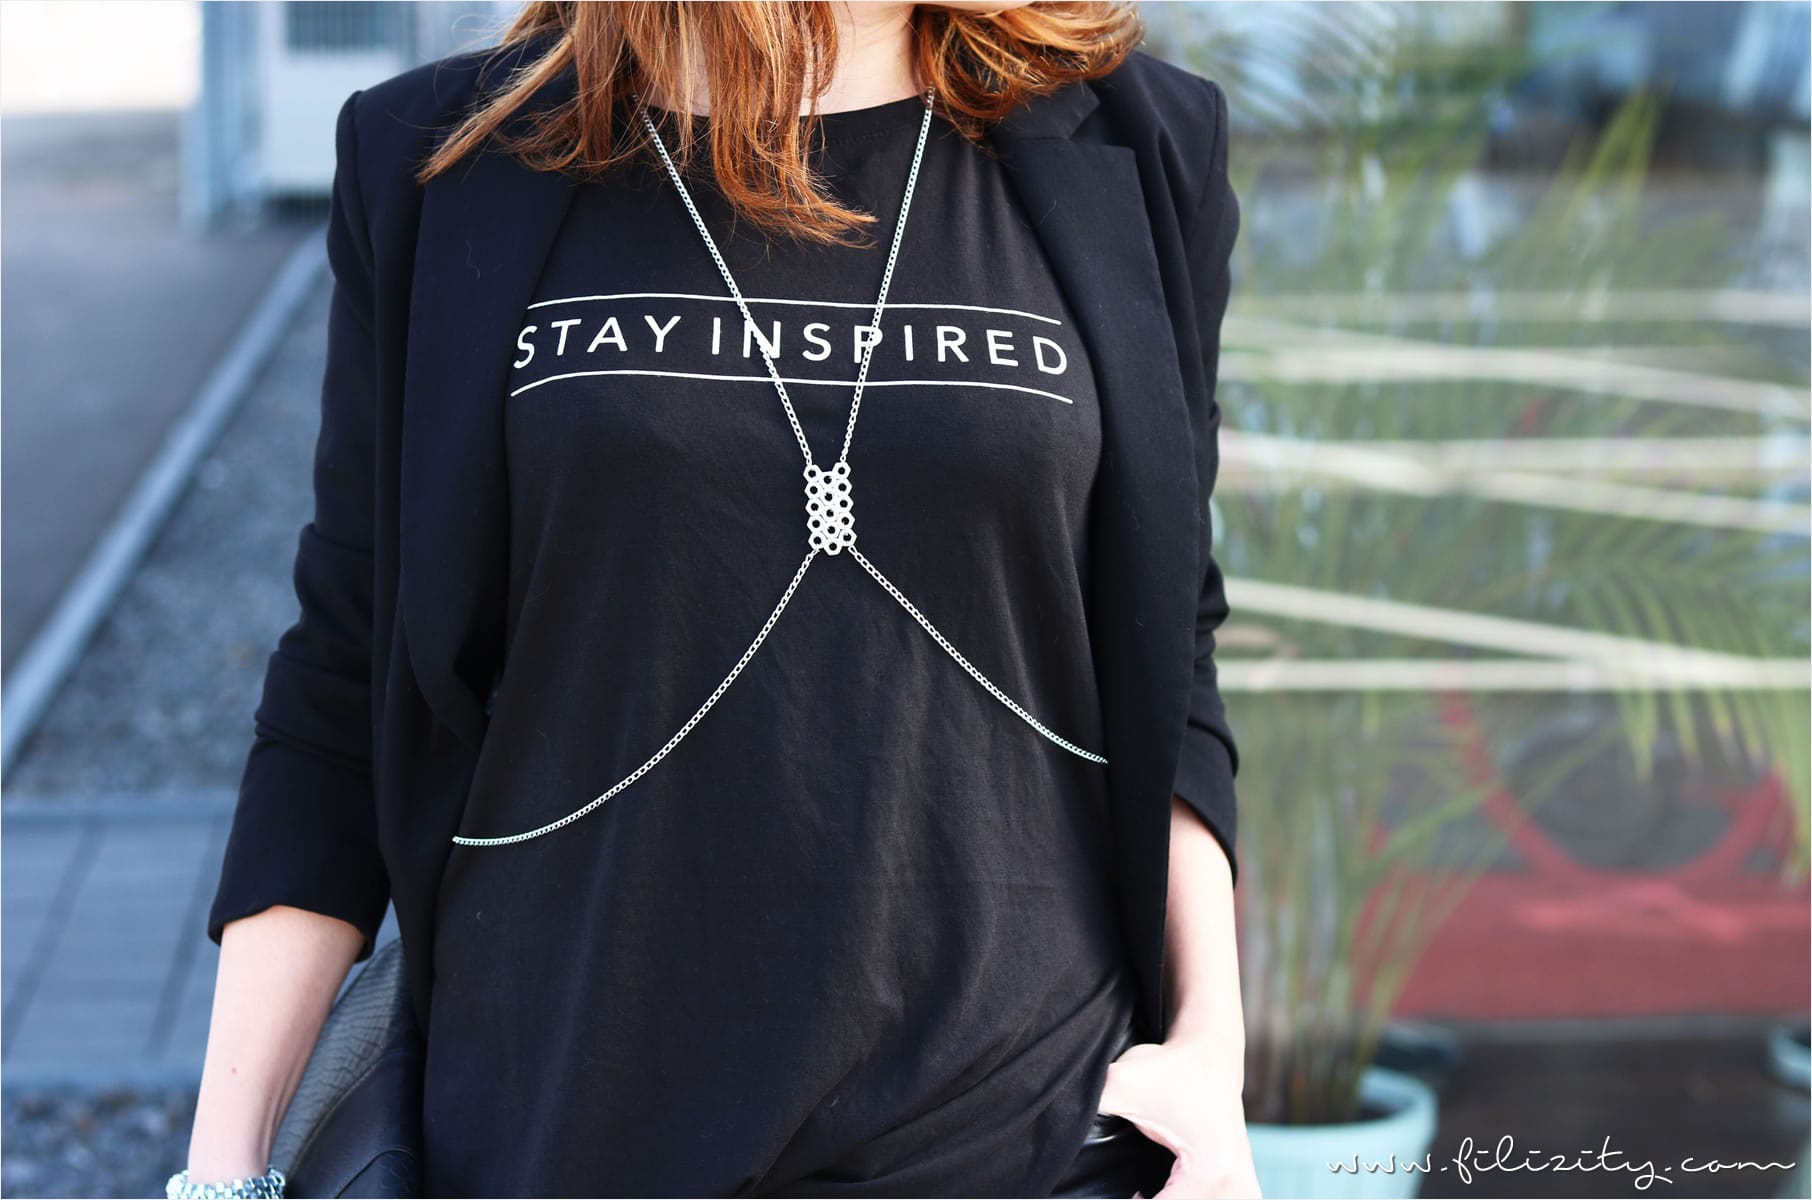 Mode mit Message – So kombiniert ihr Statement-Shirts